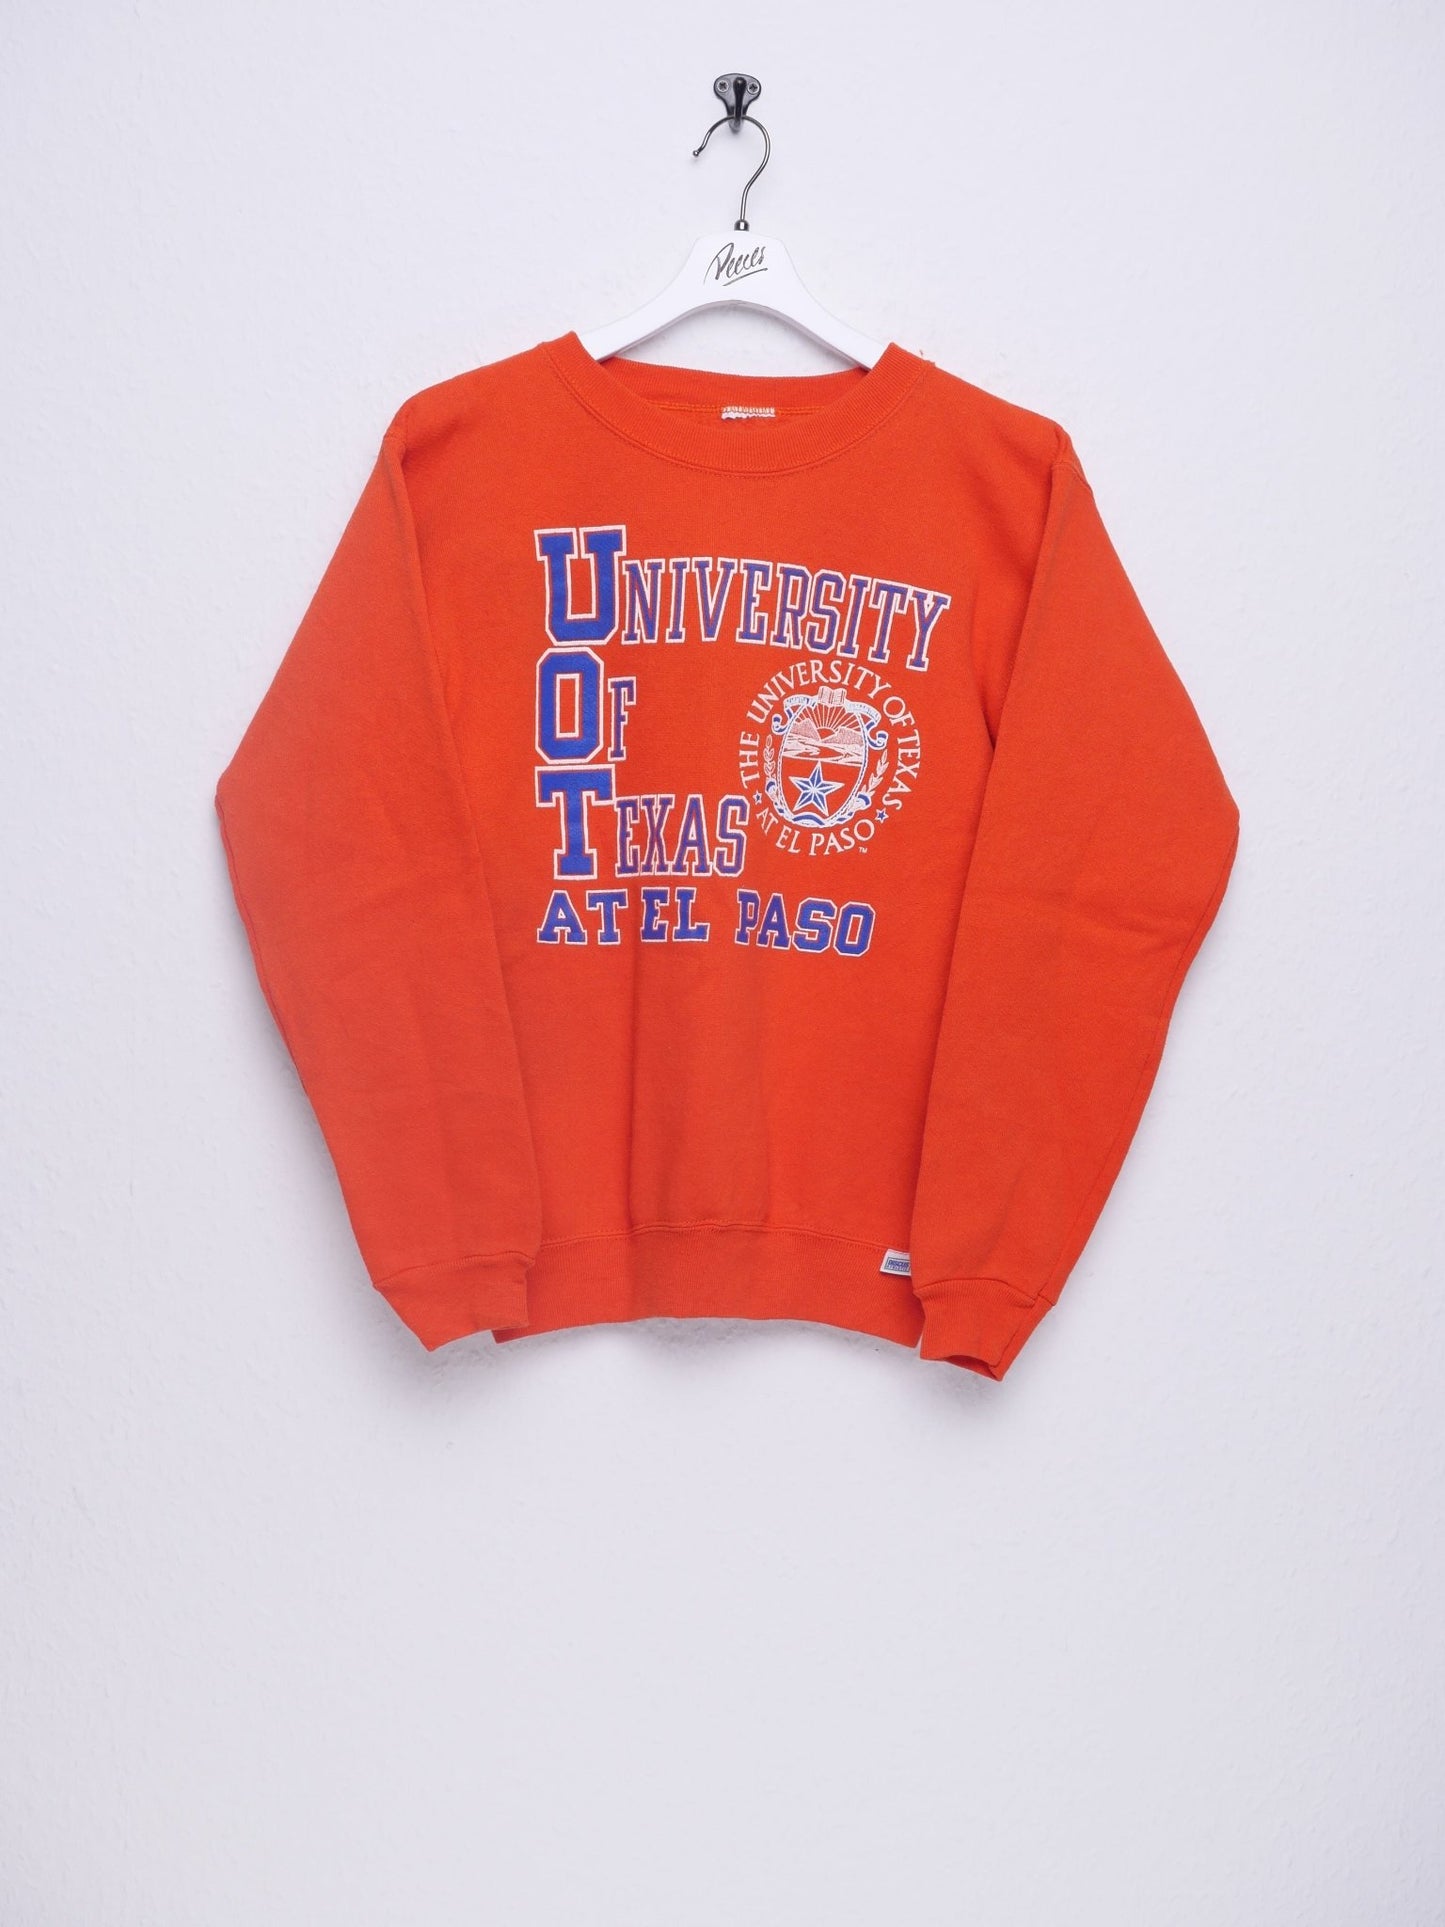 'University of Texas' printed Graphic orange Sweater - Peeces